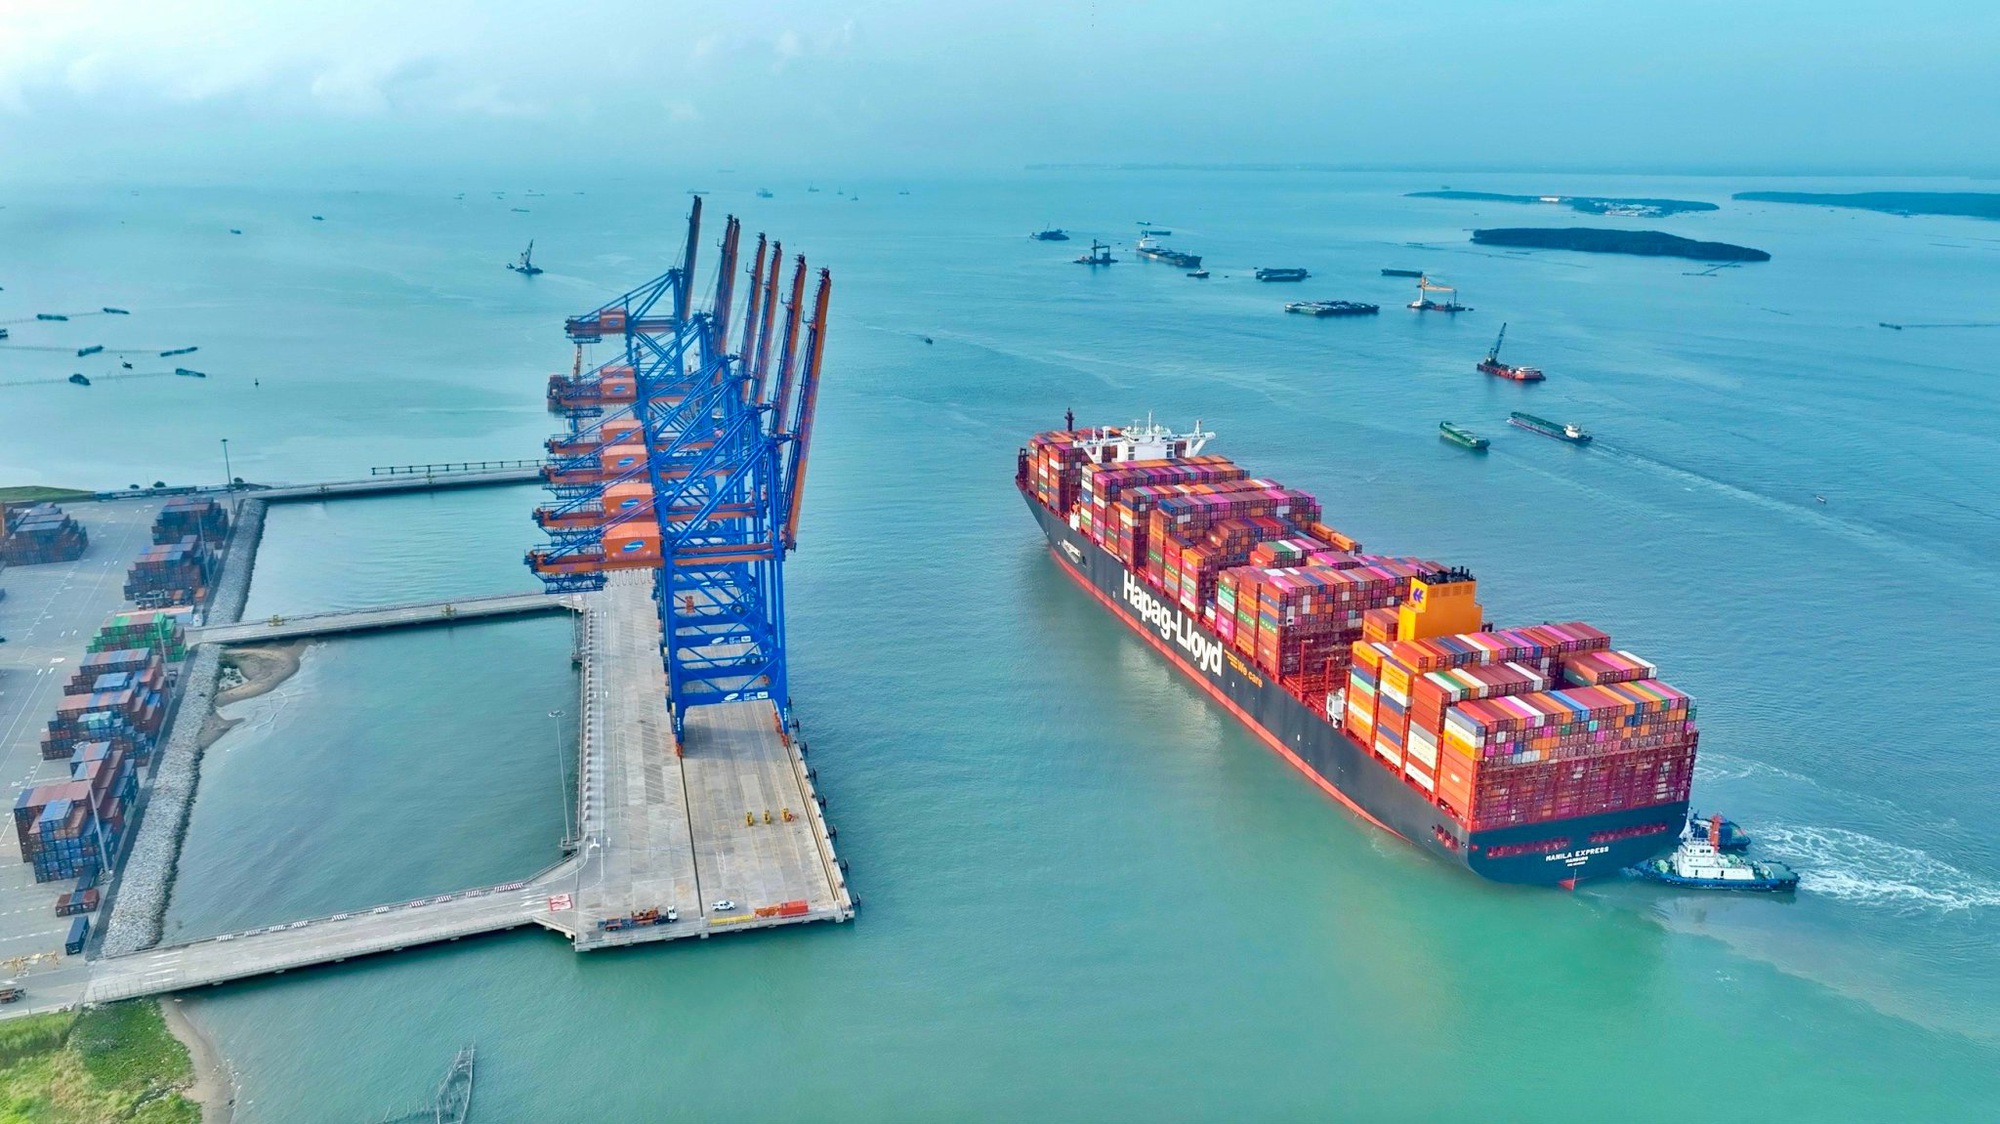 Thêm siêu tàu container vào cụm cảng Cái Mép - Thị Vải- Ảnh 3.